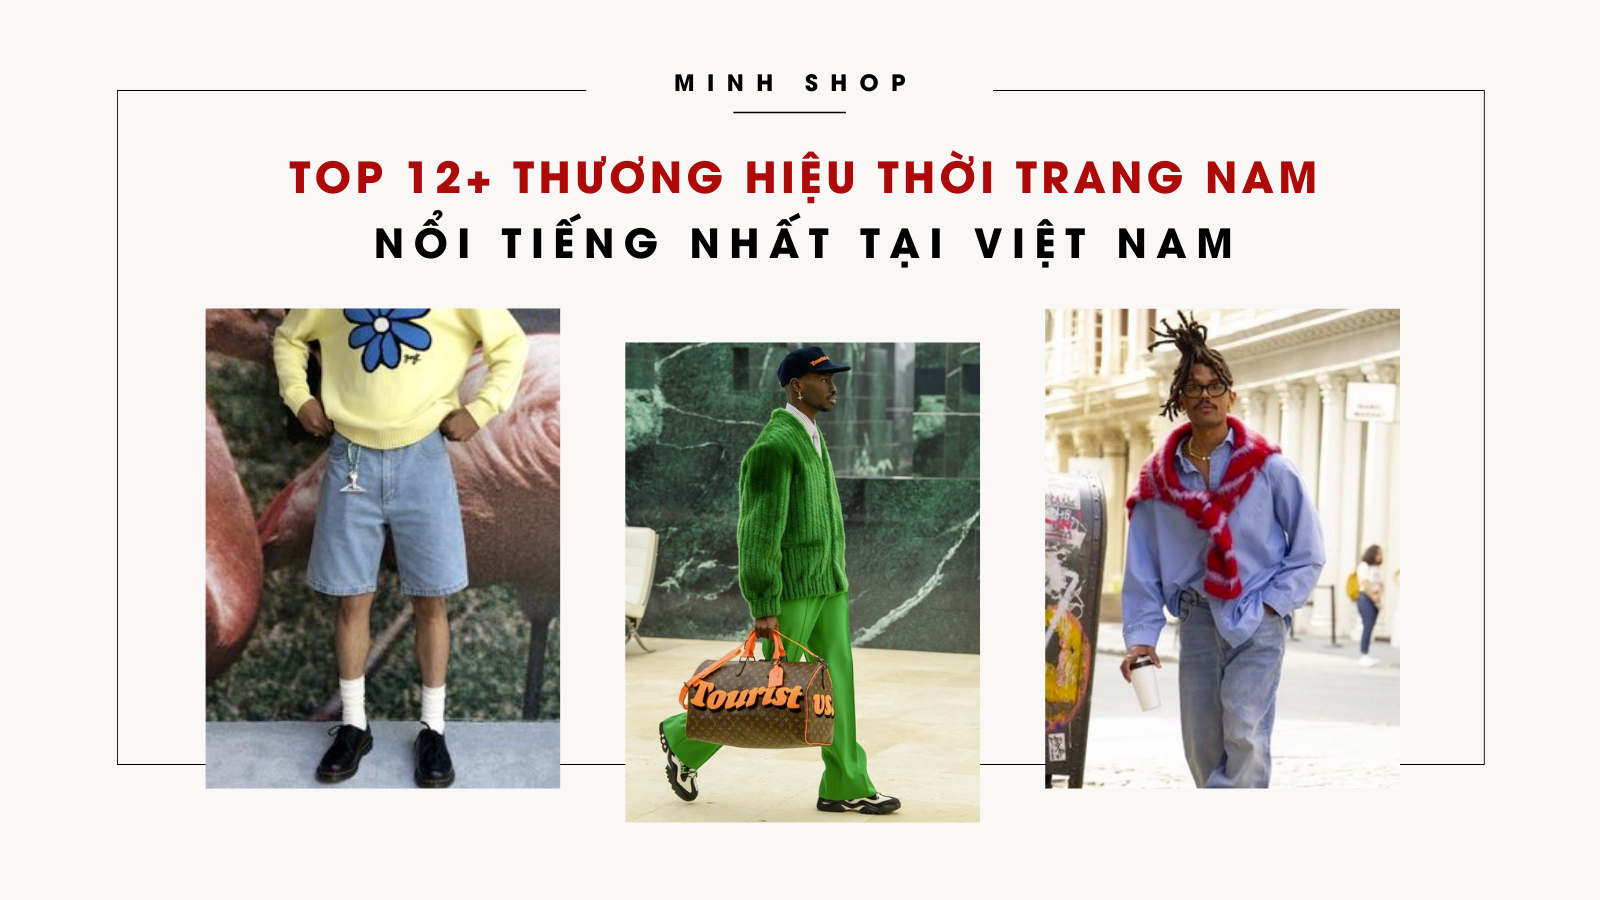 top-12-thuong-hieu-thoi-trang-nam-noi-tieng-nhat-tai-viet-nam-minhshop